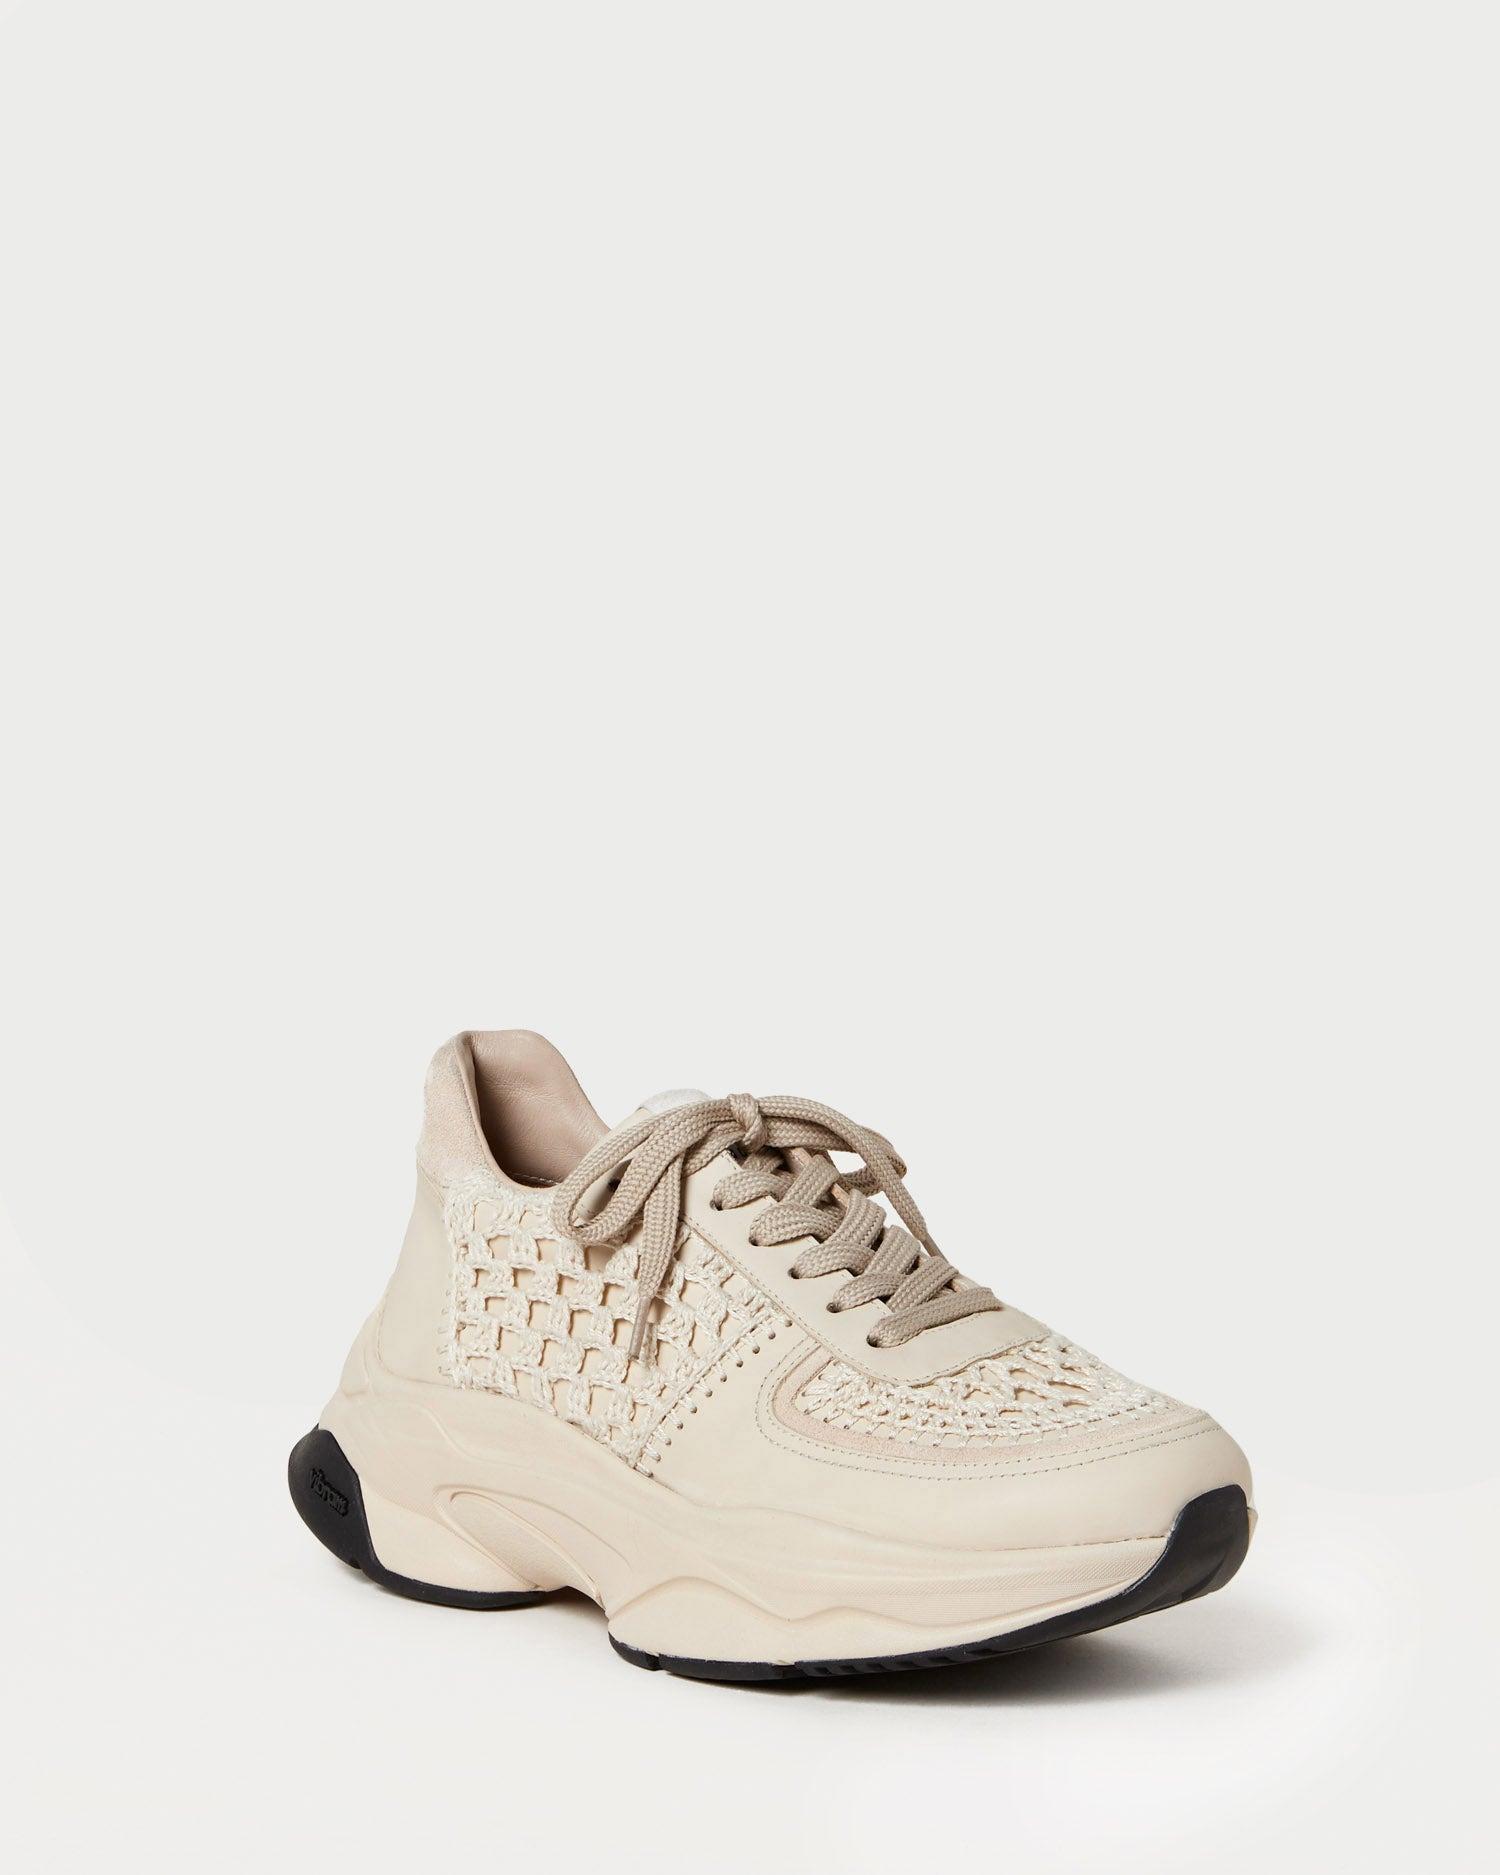 Loeffler Randall} Perforated Sneakers, 6.5